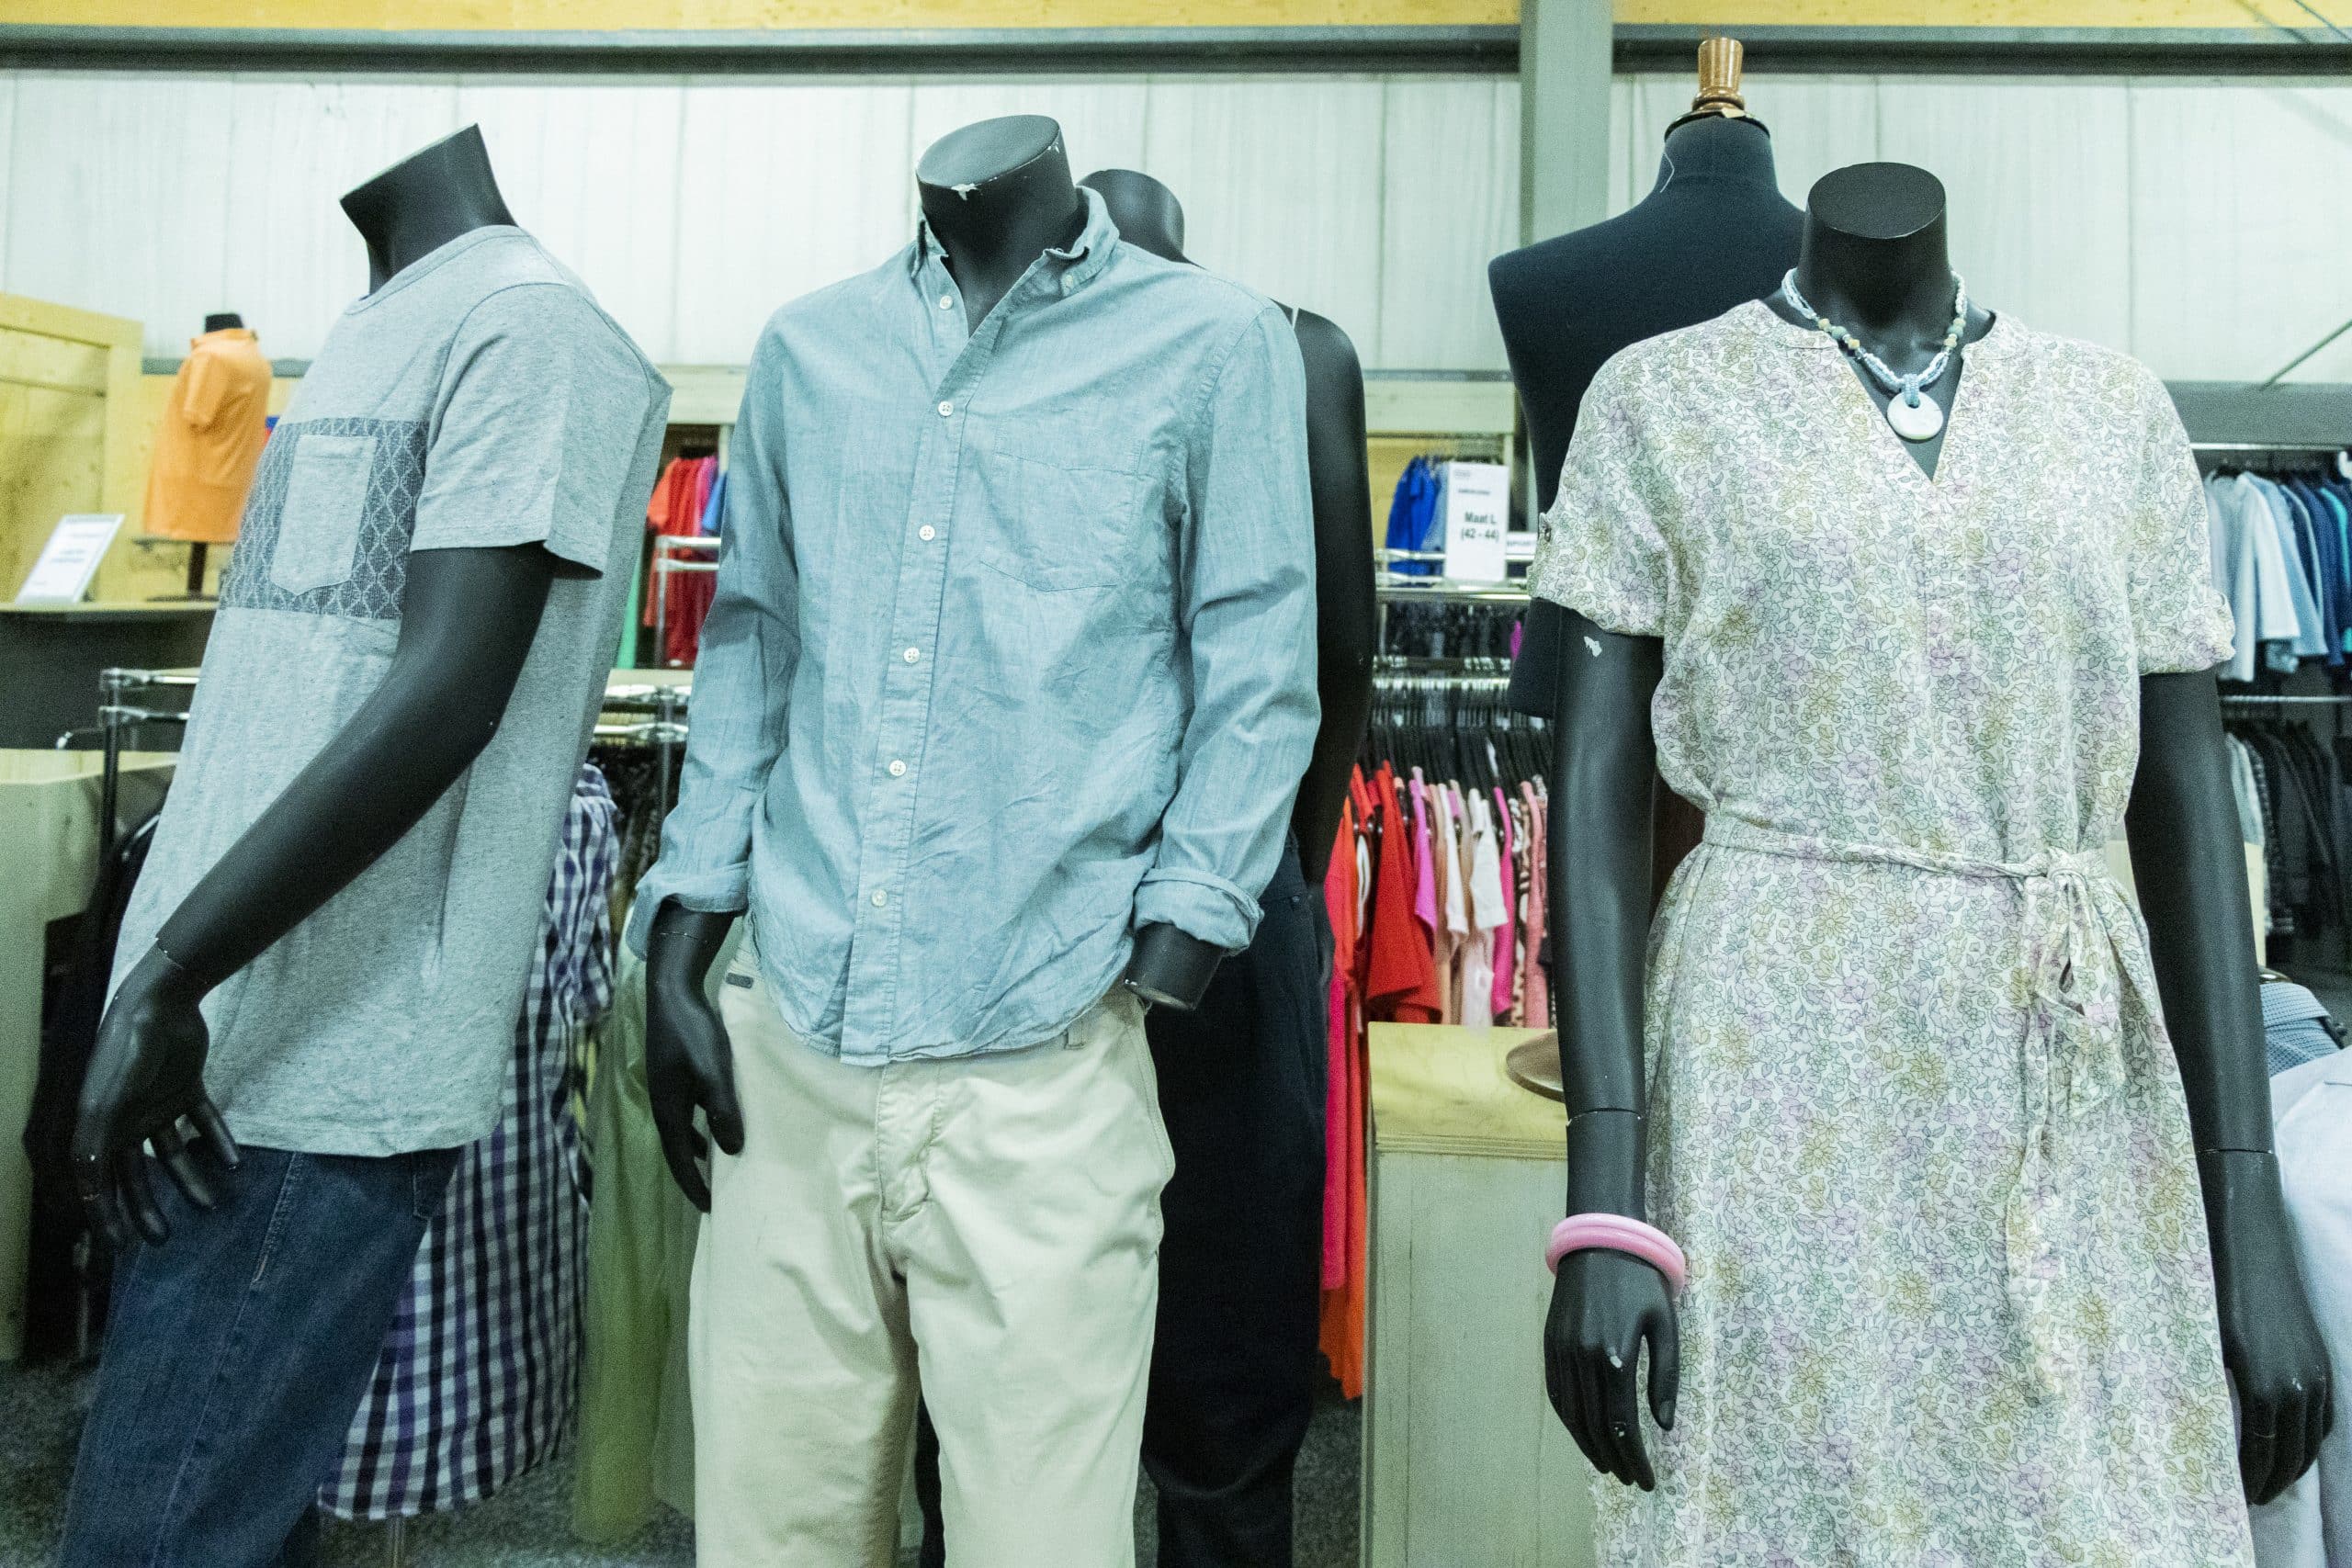 Op de foto zie je vijf paspoppen met zomerse kleding op onze textielafdeling.